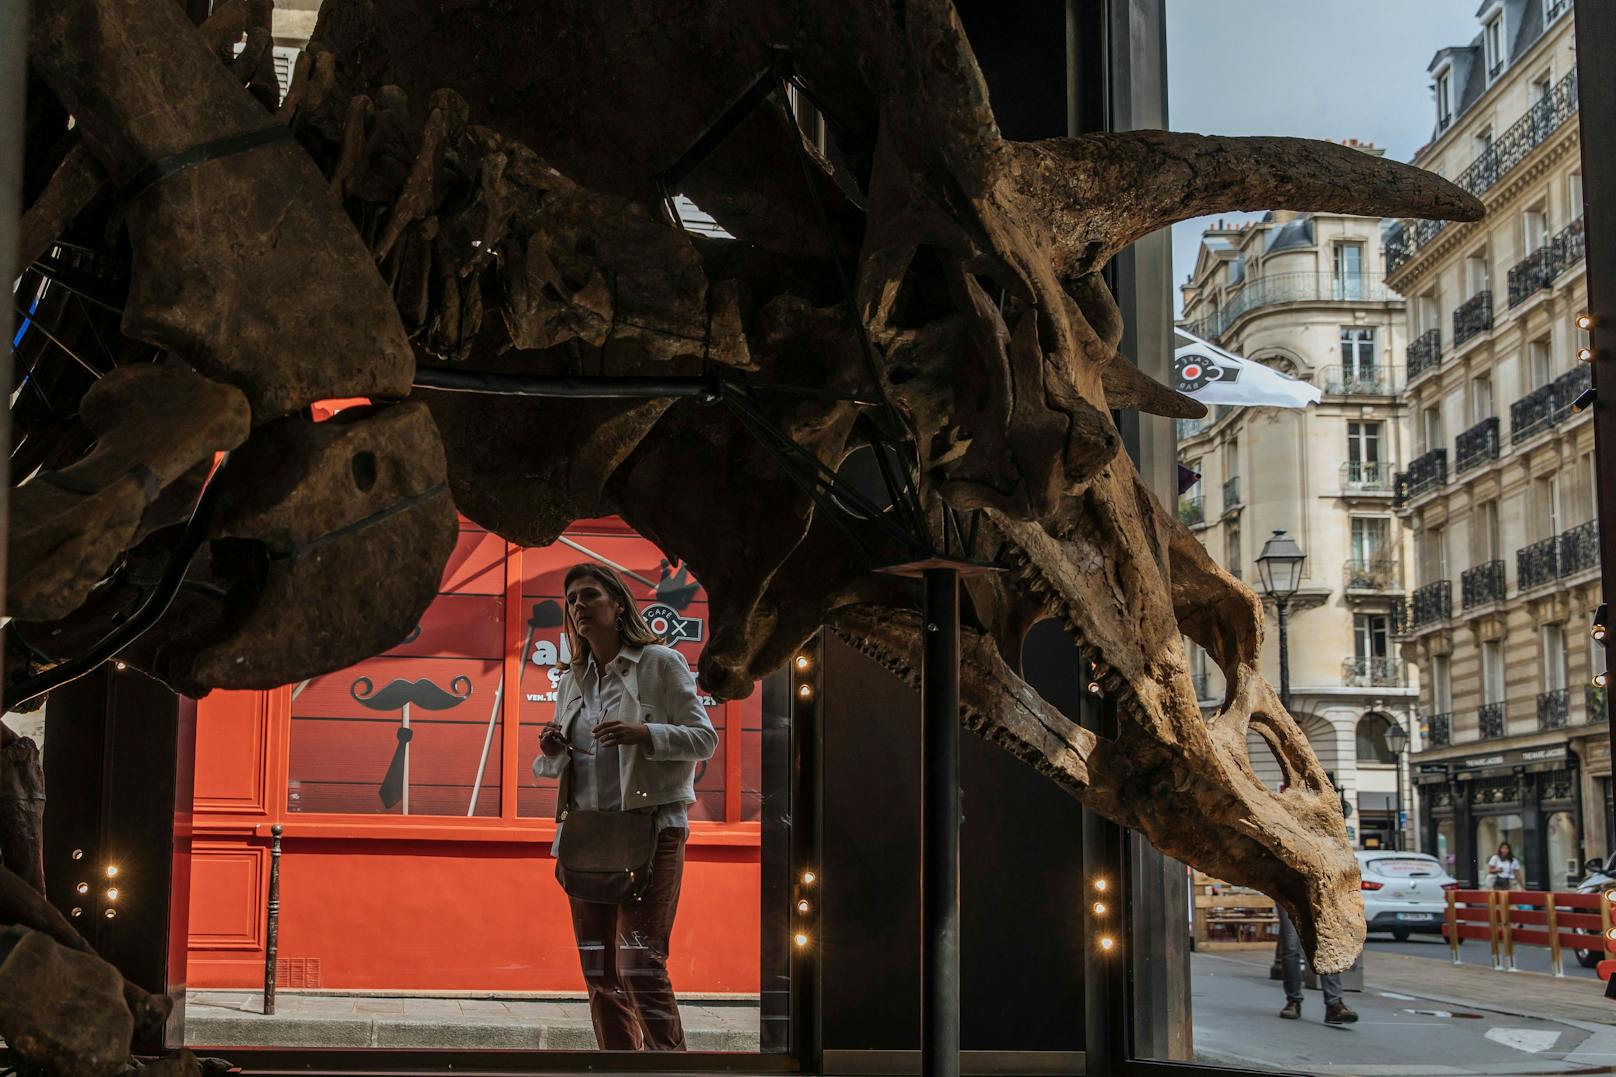 Derzeit kann der größte je gefundene Triceratops noch im Pariser Stadtviertel Marais bewundert werden.